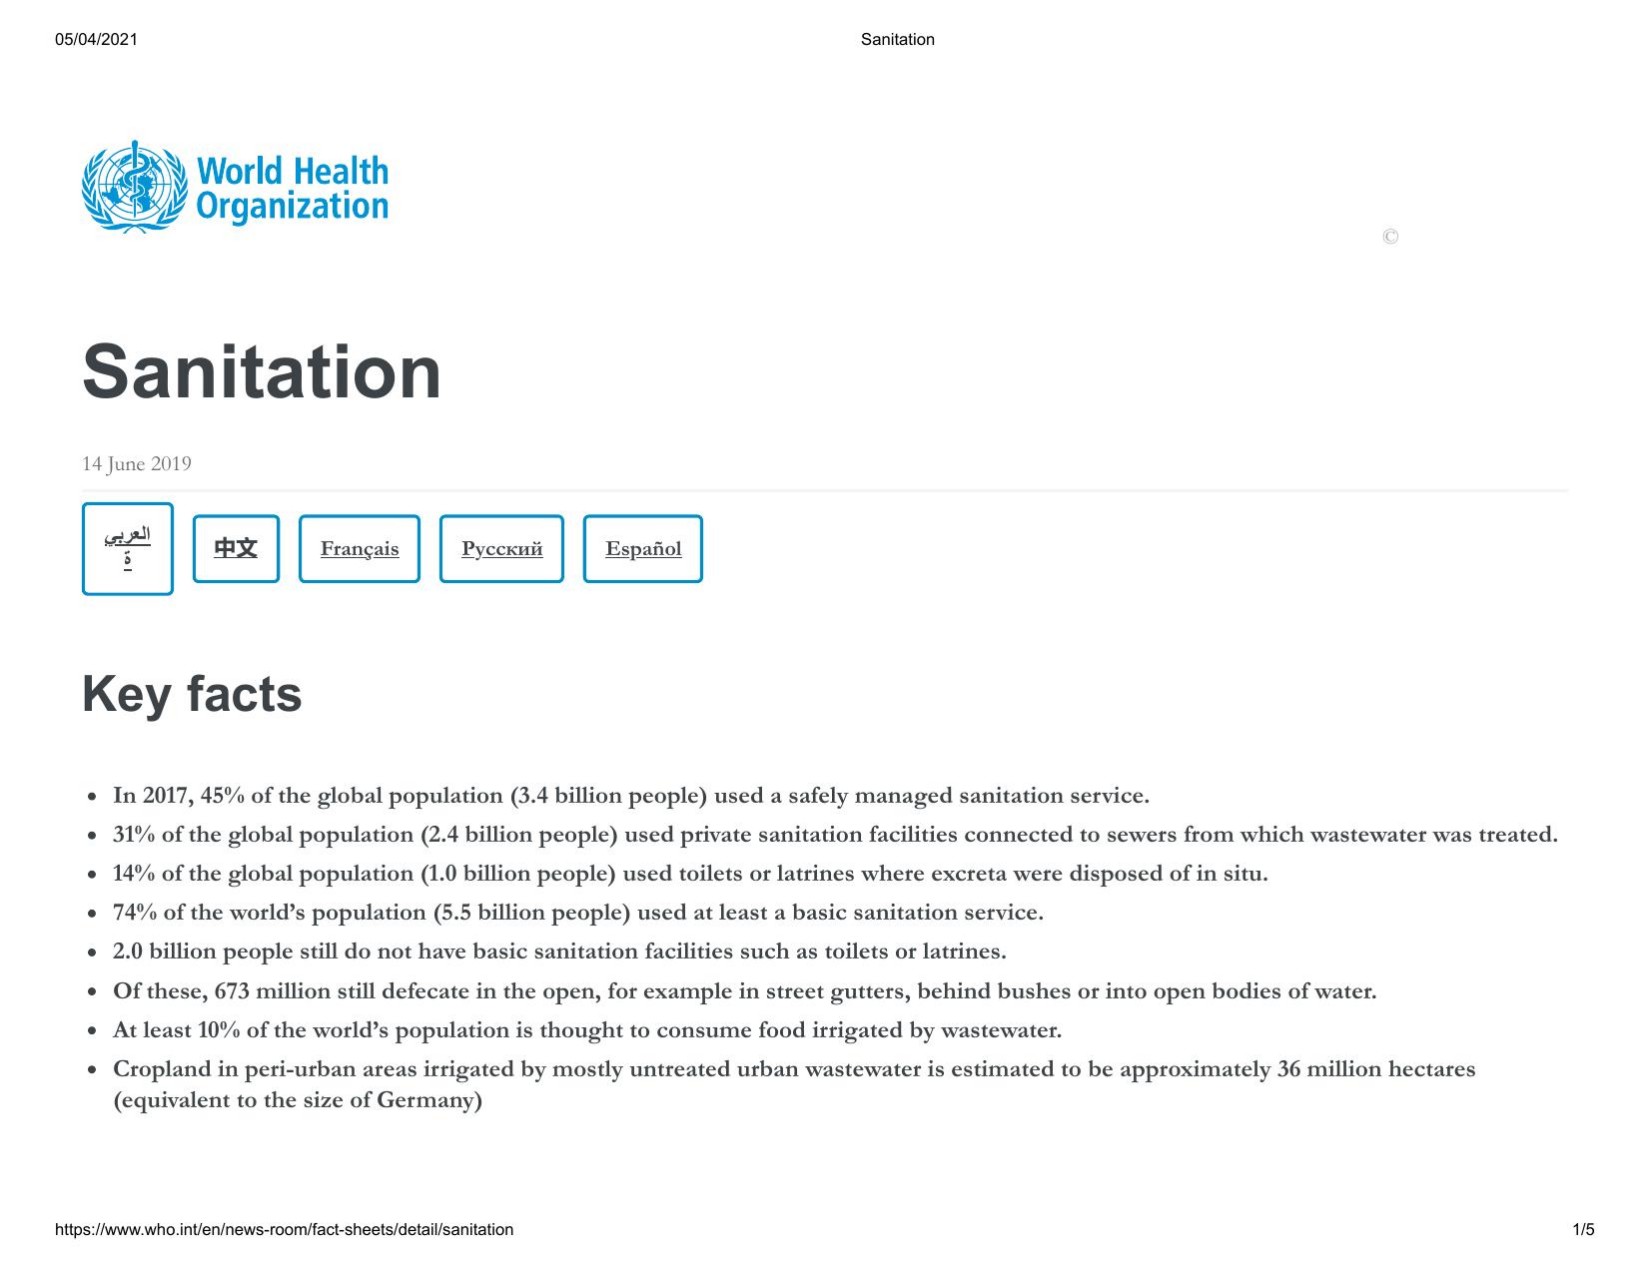 Fact Sheet on Sanitation